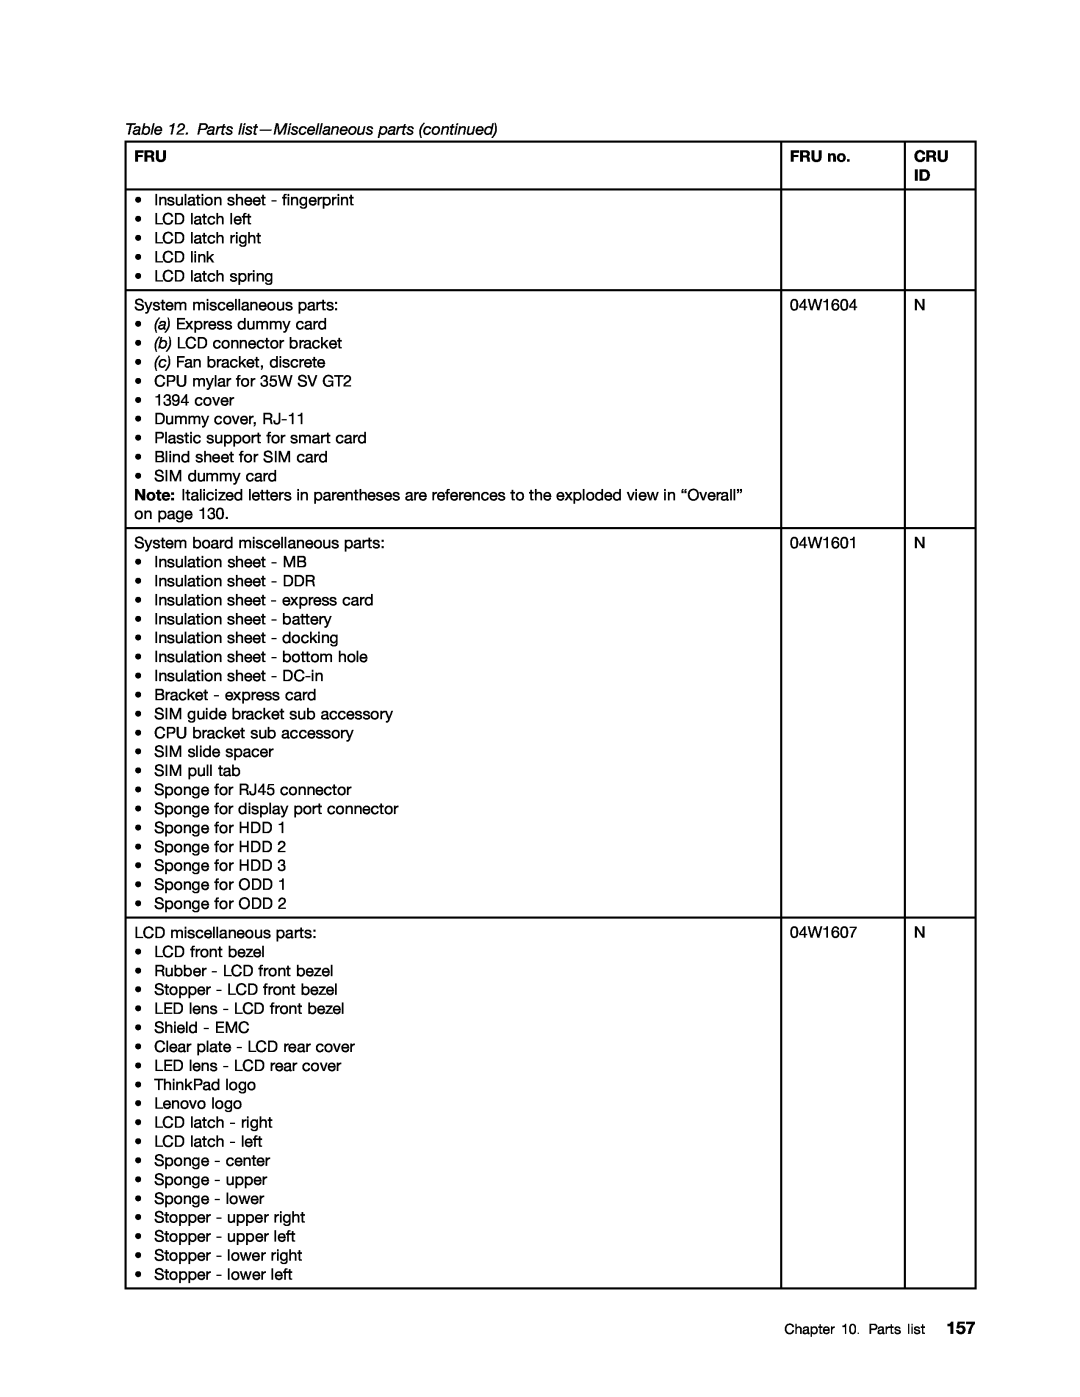 Lenovo T420i manual Parts list-Miscellaneous parts continued, FRU no 